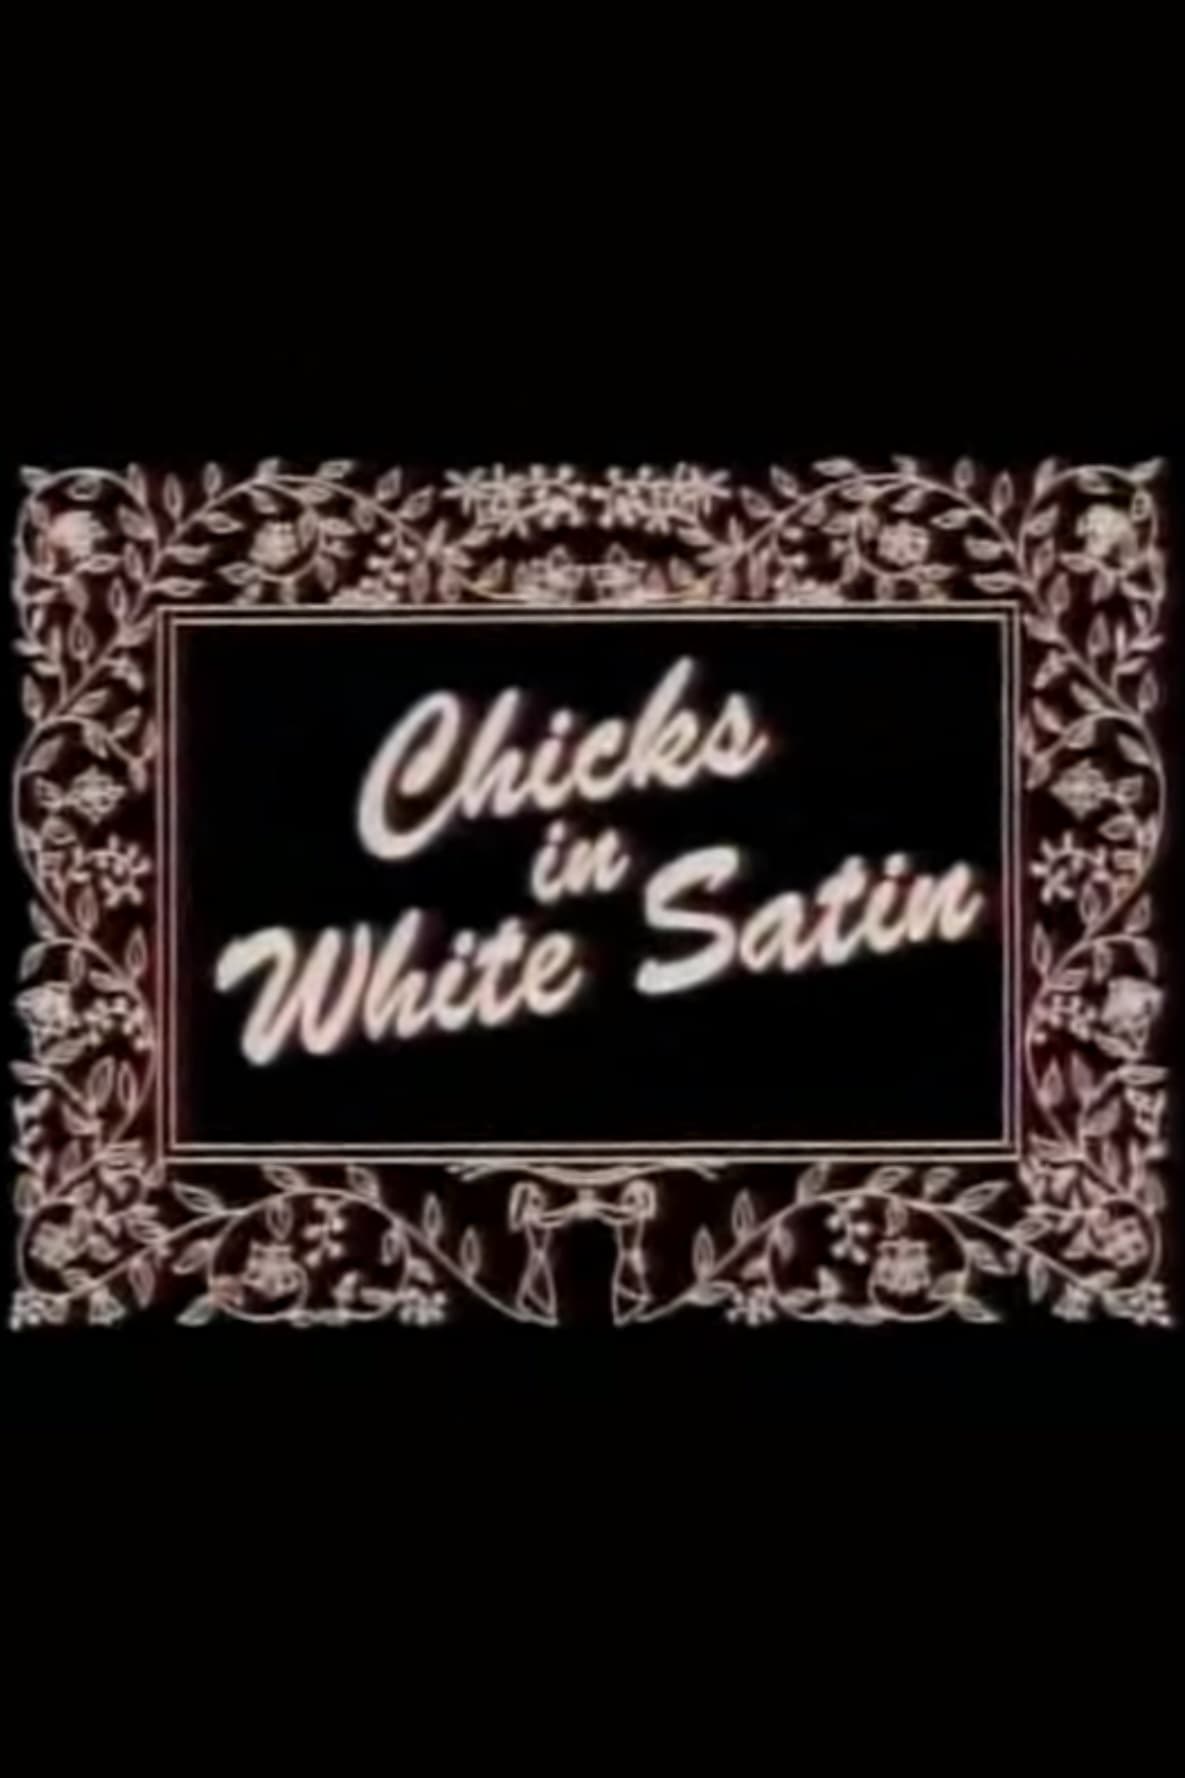 Chicks in White Satin